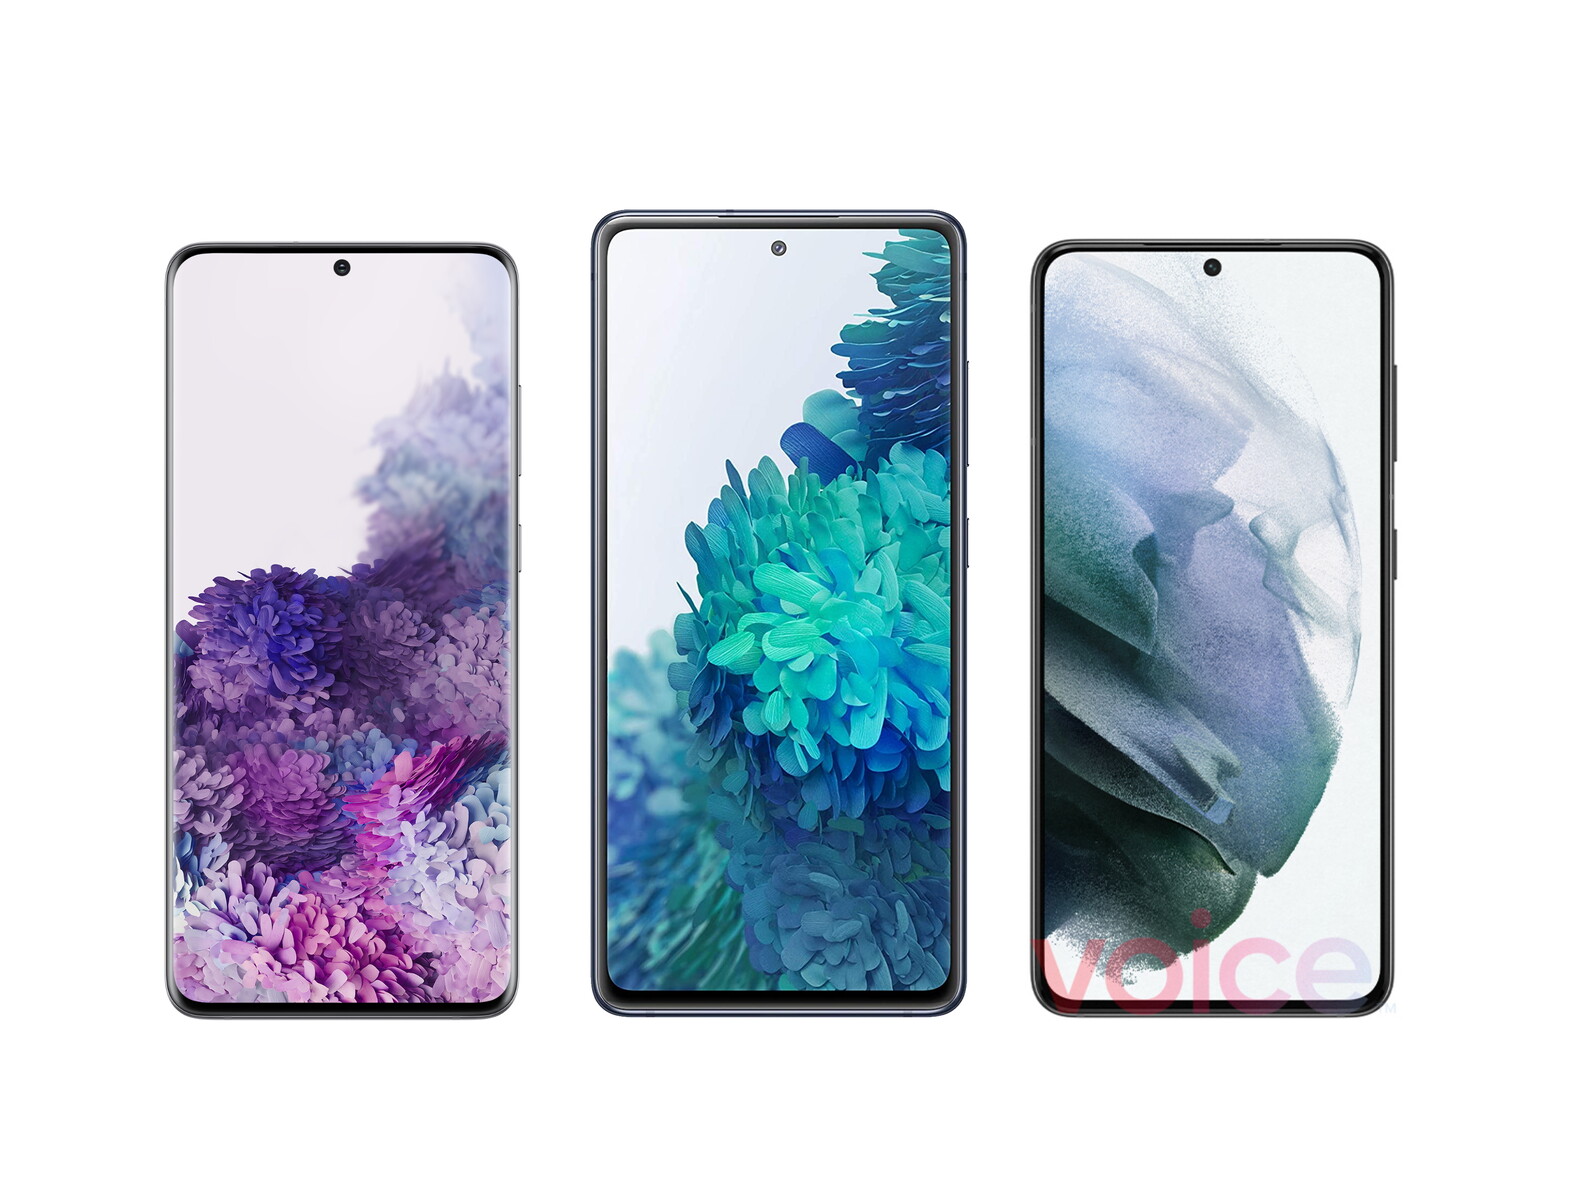 Galaxy S21 5G: Một trong những chiếc điện thoại thông minh hàng đầu trên thị trường hiện nay, Galaxy S21 5G của Samsung được trang bị những công nghệ hàng đầu và tính năng đầy thú vị. Với thiết kế đẹp mắt và hiệu năng mạnh mẽ, chiếc điện thoại này chắc chắn sẽ làm hài lòng mọi khách hàng khó tính. Hãy xem hình ảnh để tận hưởng vẻ đẹp của chiếc Galaxy S21 5G này nhé!